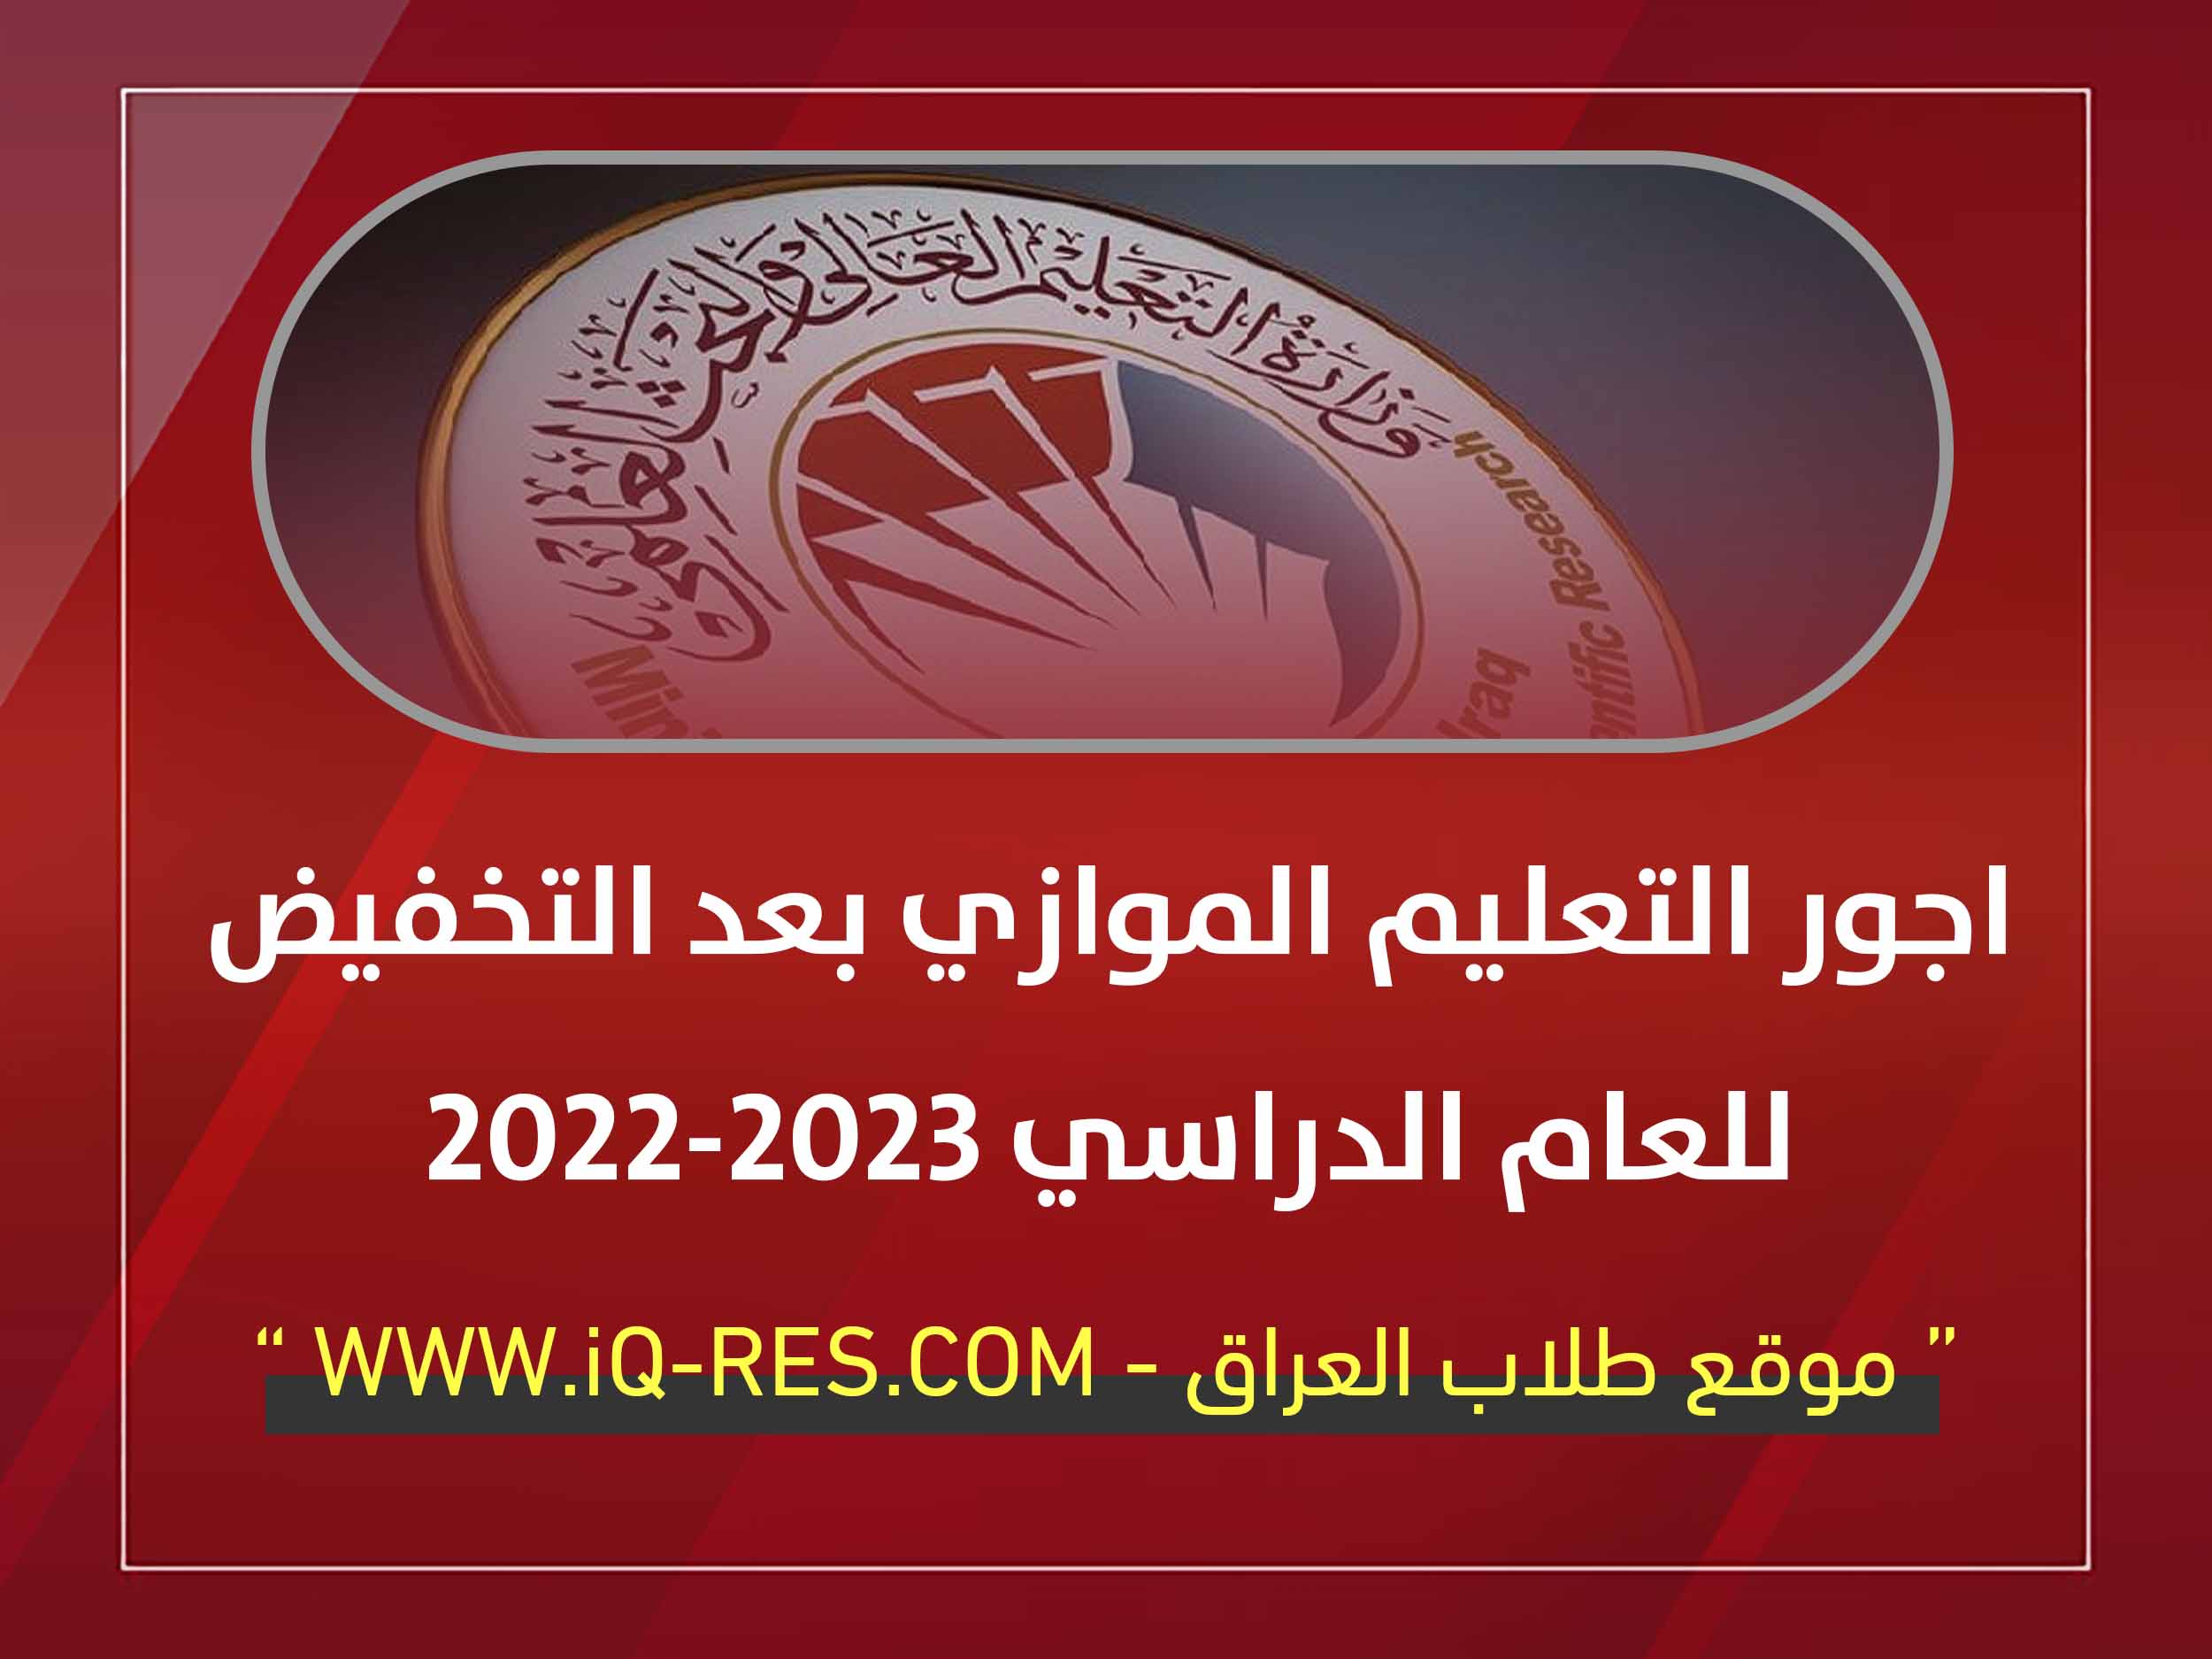 الاجور الدراسية للتعليم الموازي 2022-2023 بعد التخفيض في العراق Yi_aai11